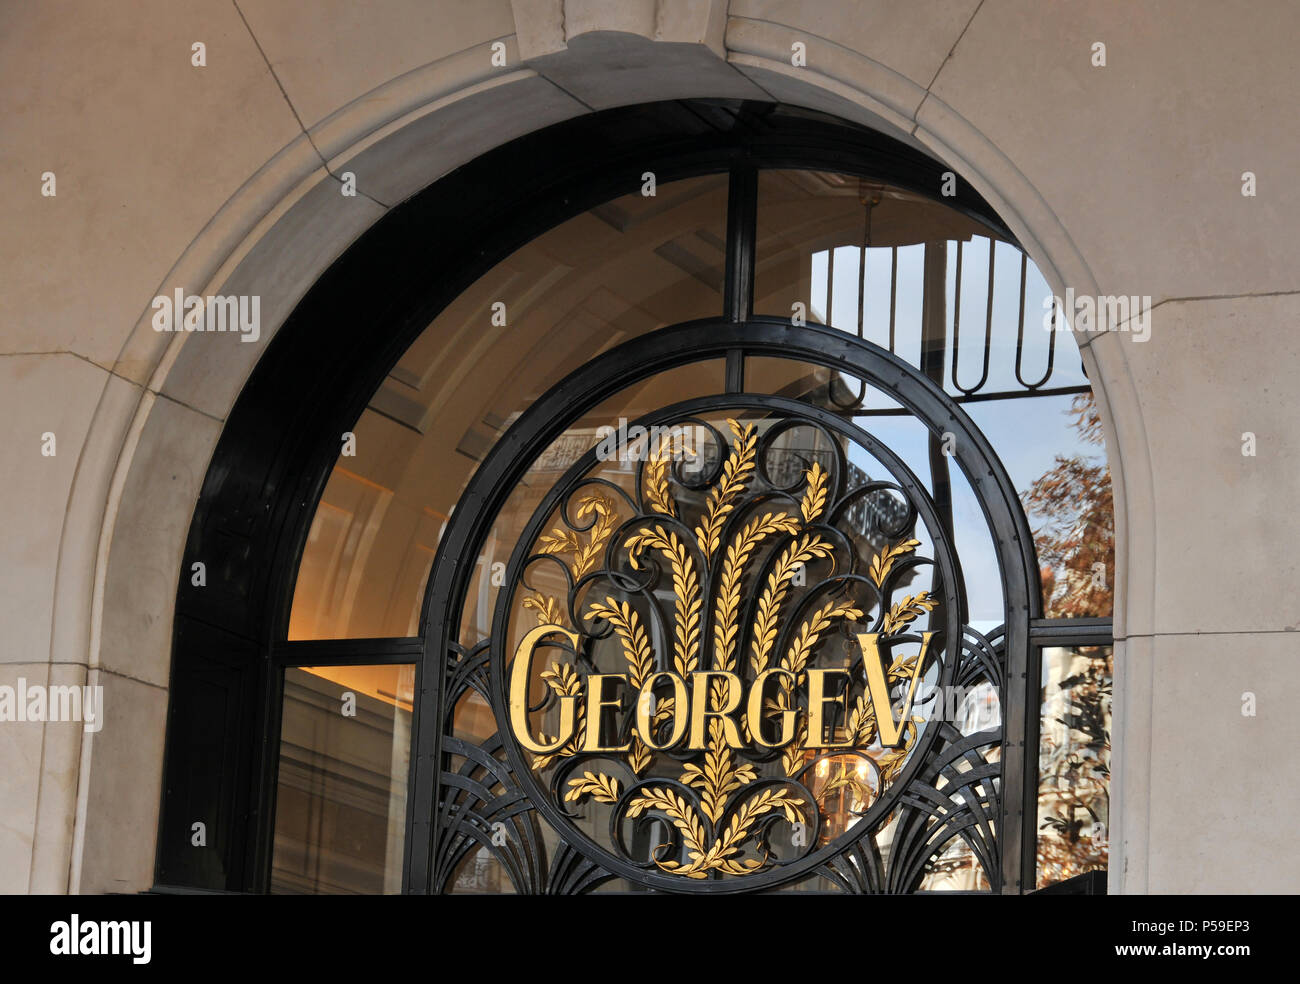 Le Four Seasons Hotel George V, Paris, France Banque D'Images